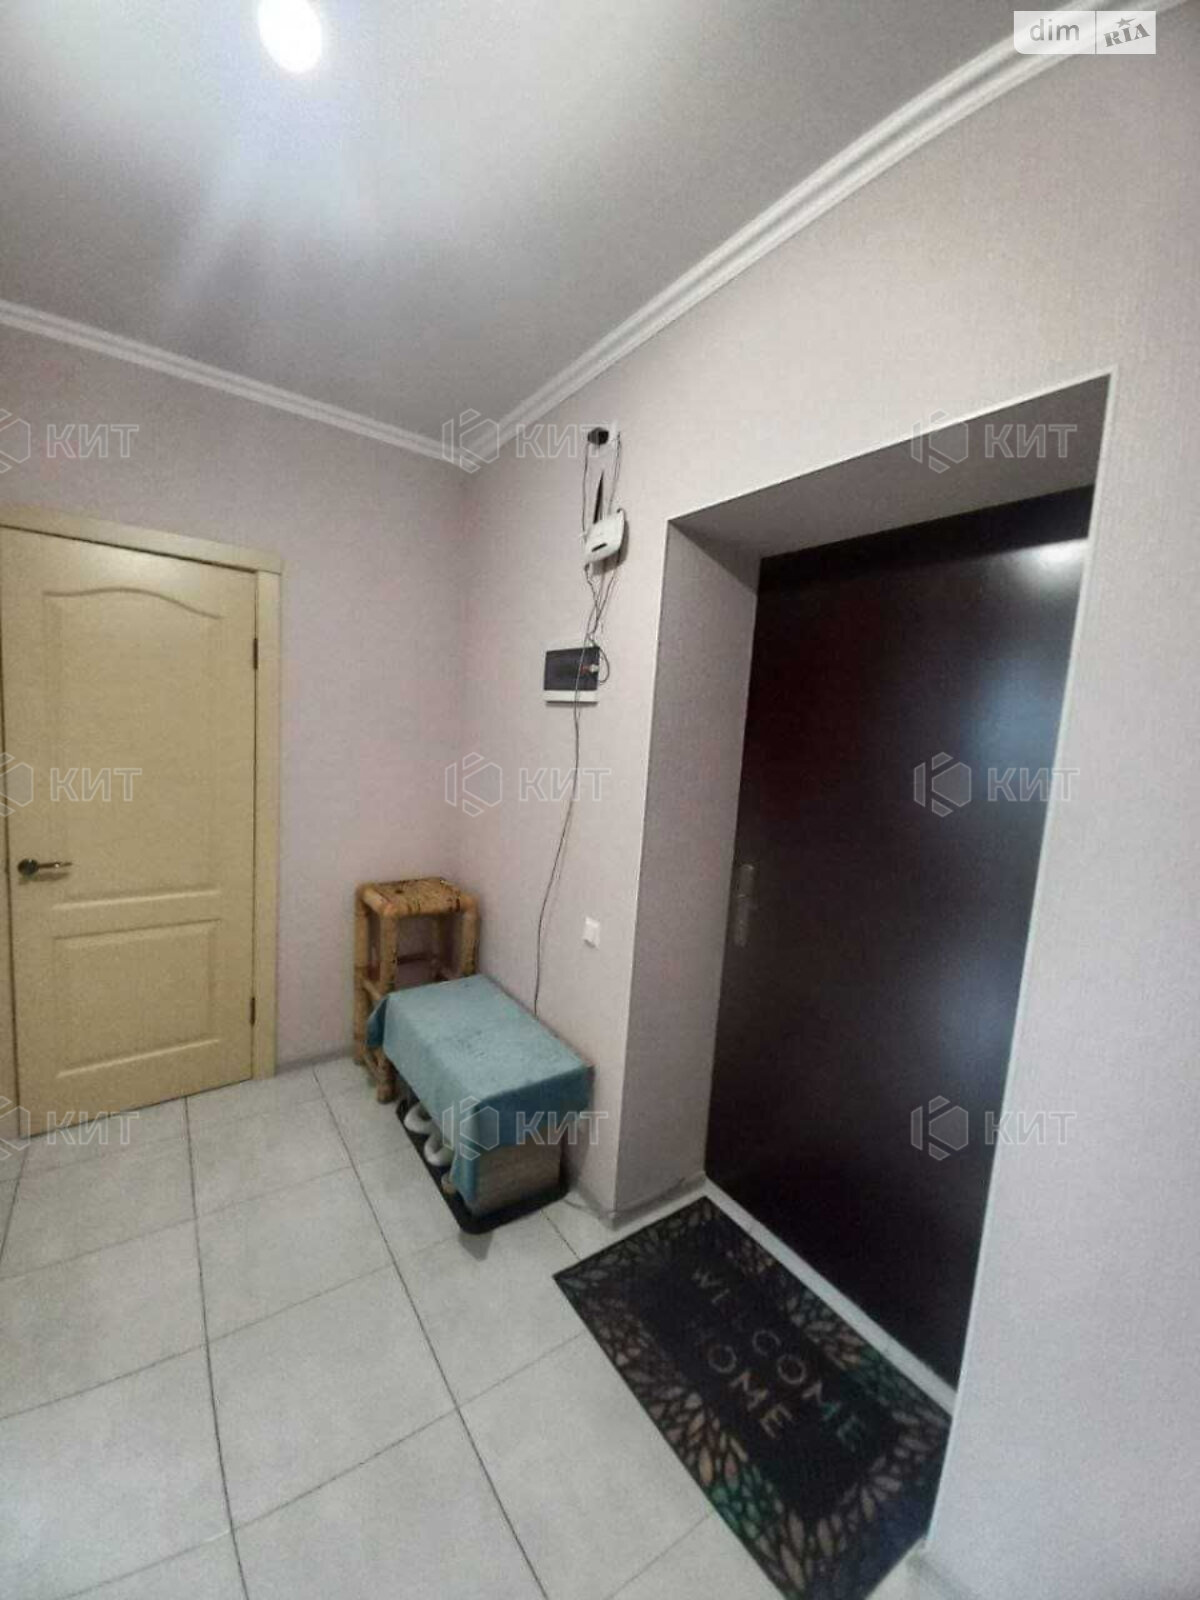 Продажа двухкомнатной квартиры в Харькове, на ул. Франковская 10, район Центр фото 1